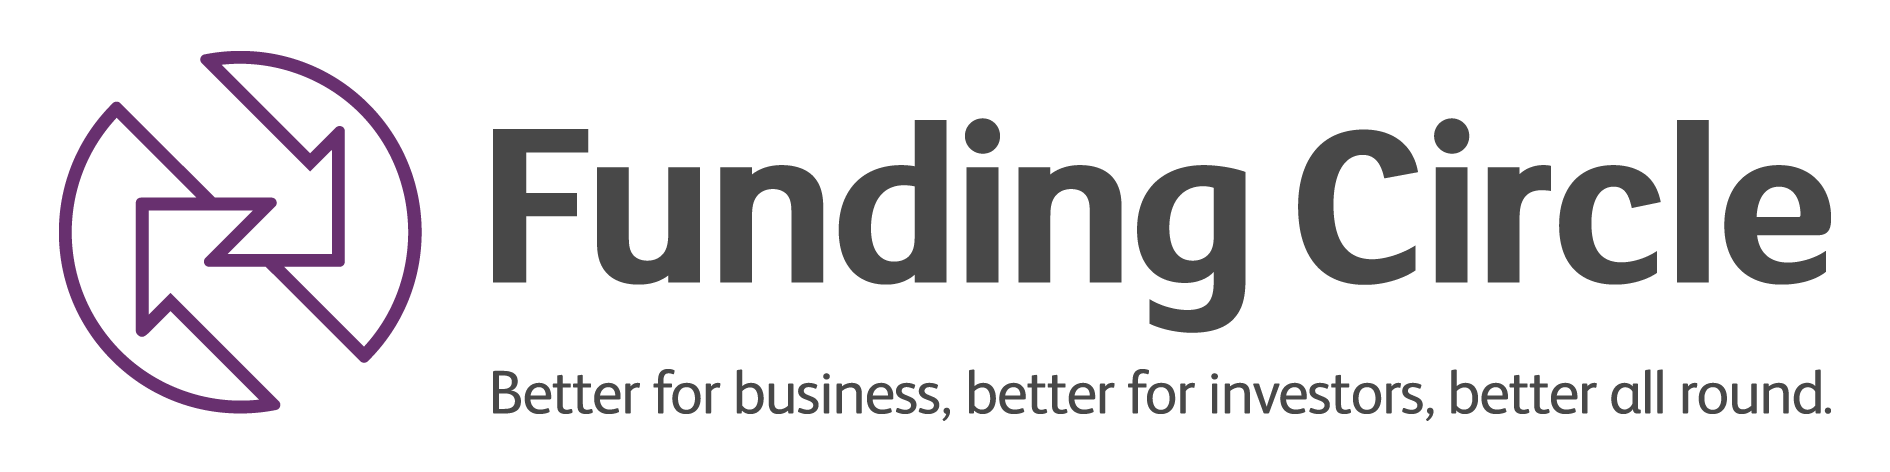 Funding Circle passes £1bn lending barrier